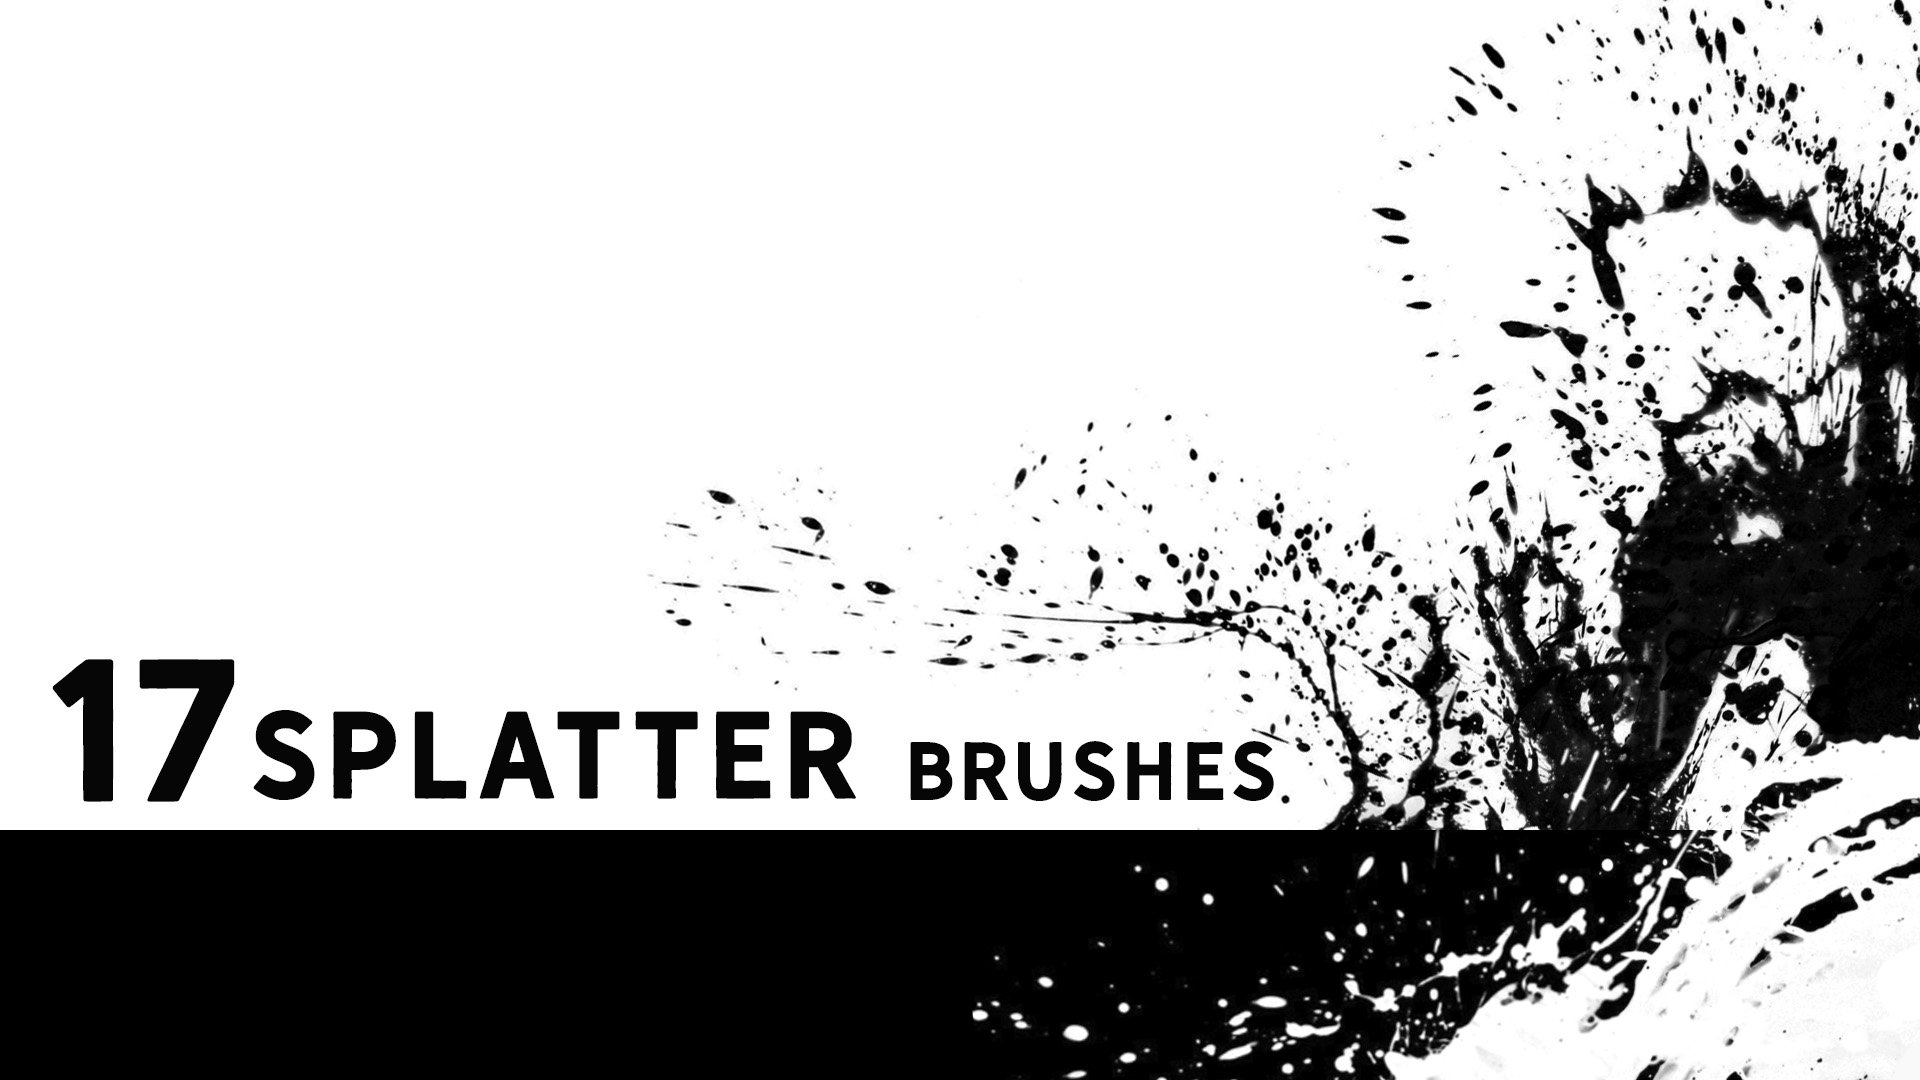 Circular splatter brushescover image.